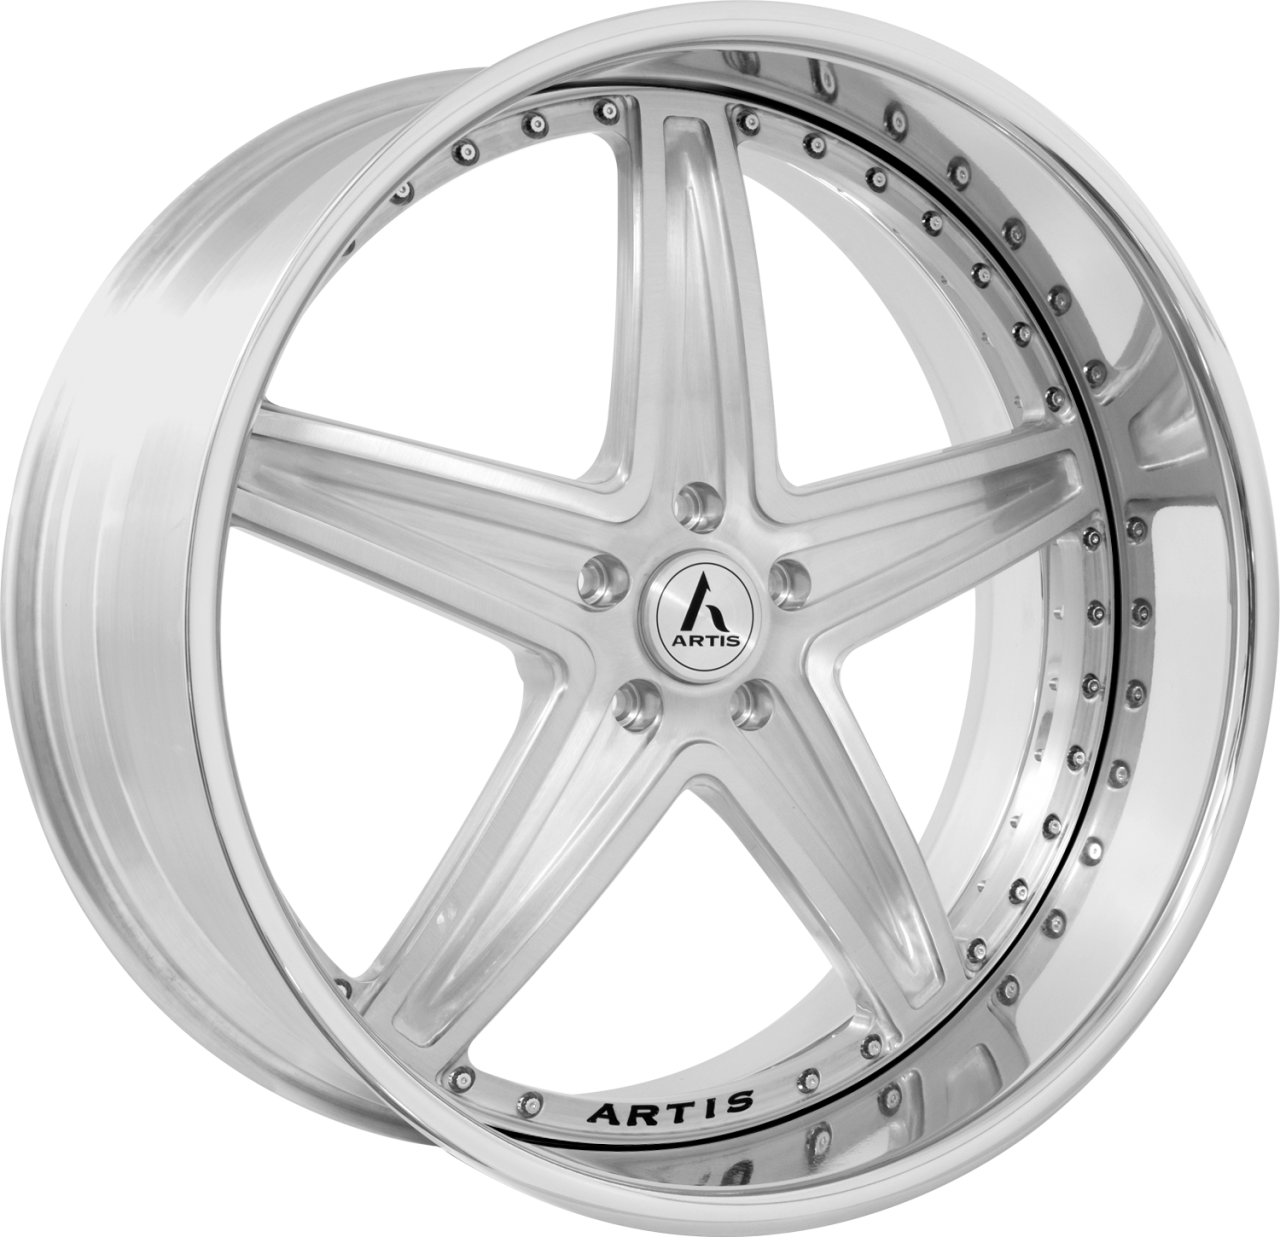 Artis Forged Bayou wheel with Brushed finish